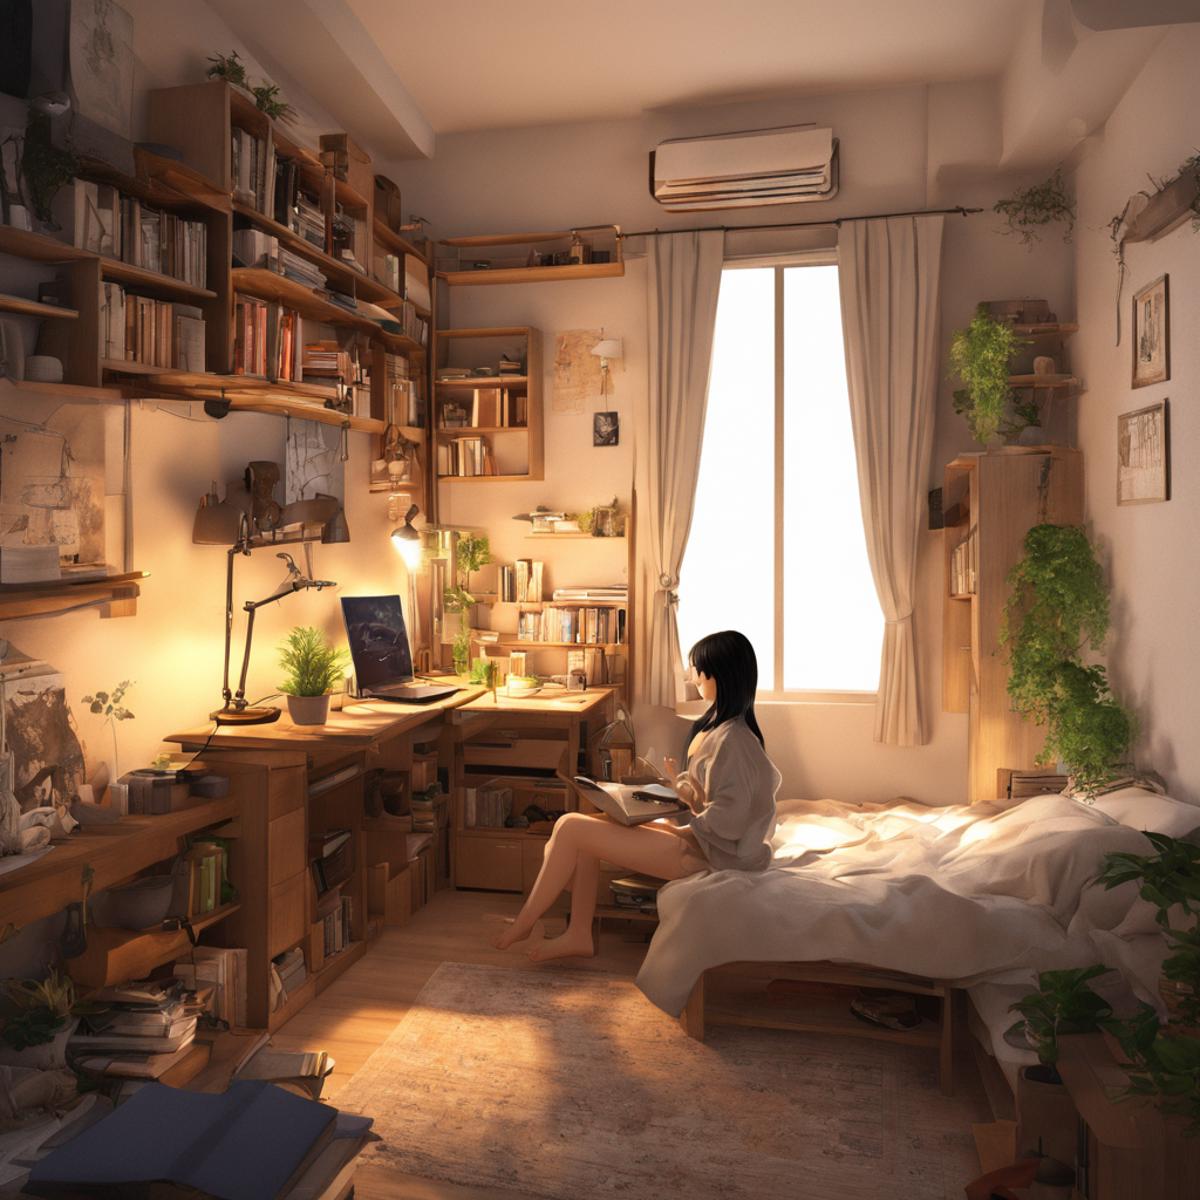 ひとり暮らしの女子の部屋 / Room of a girl living alone SDXL image by swingwings